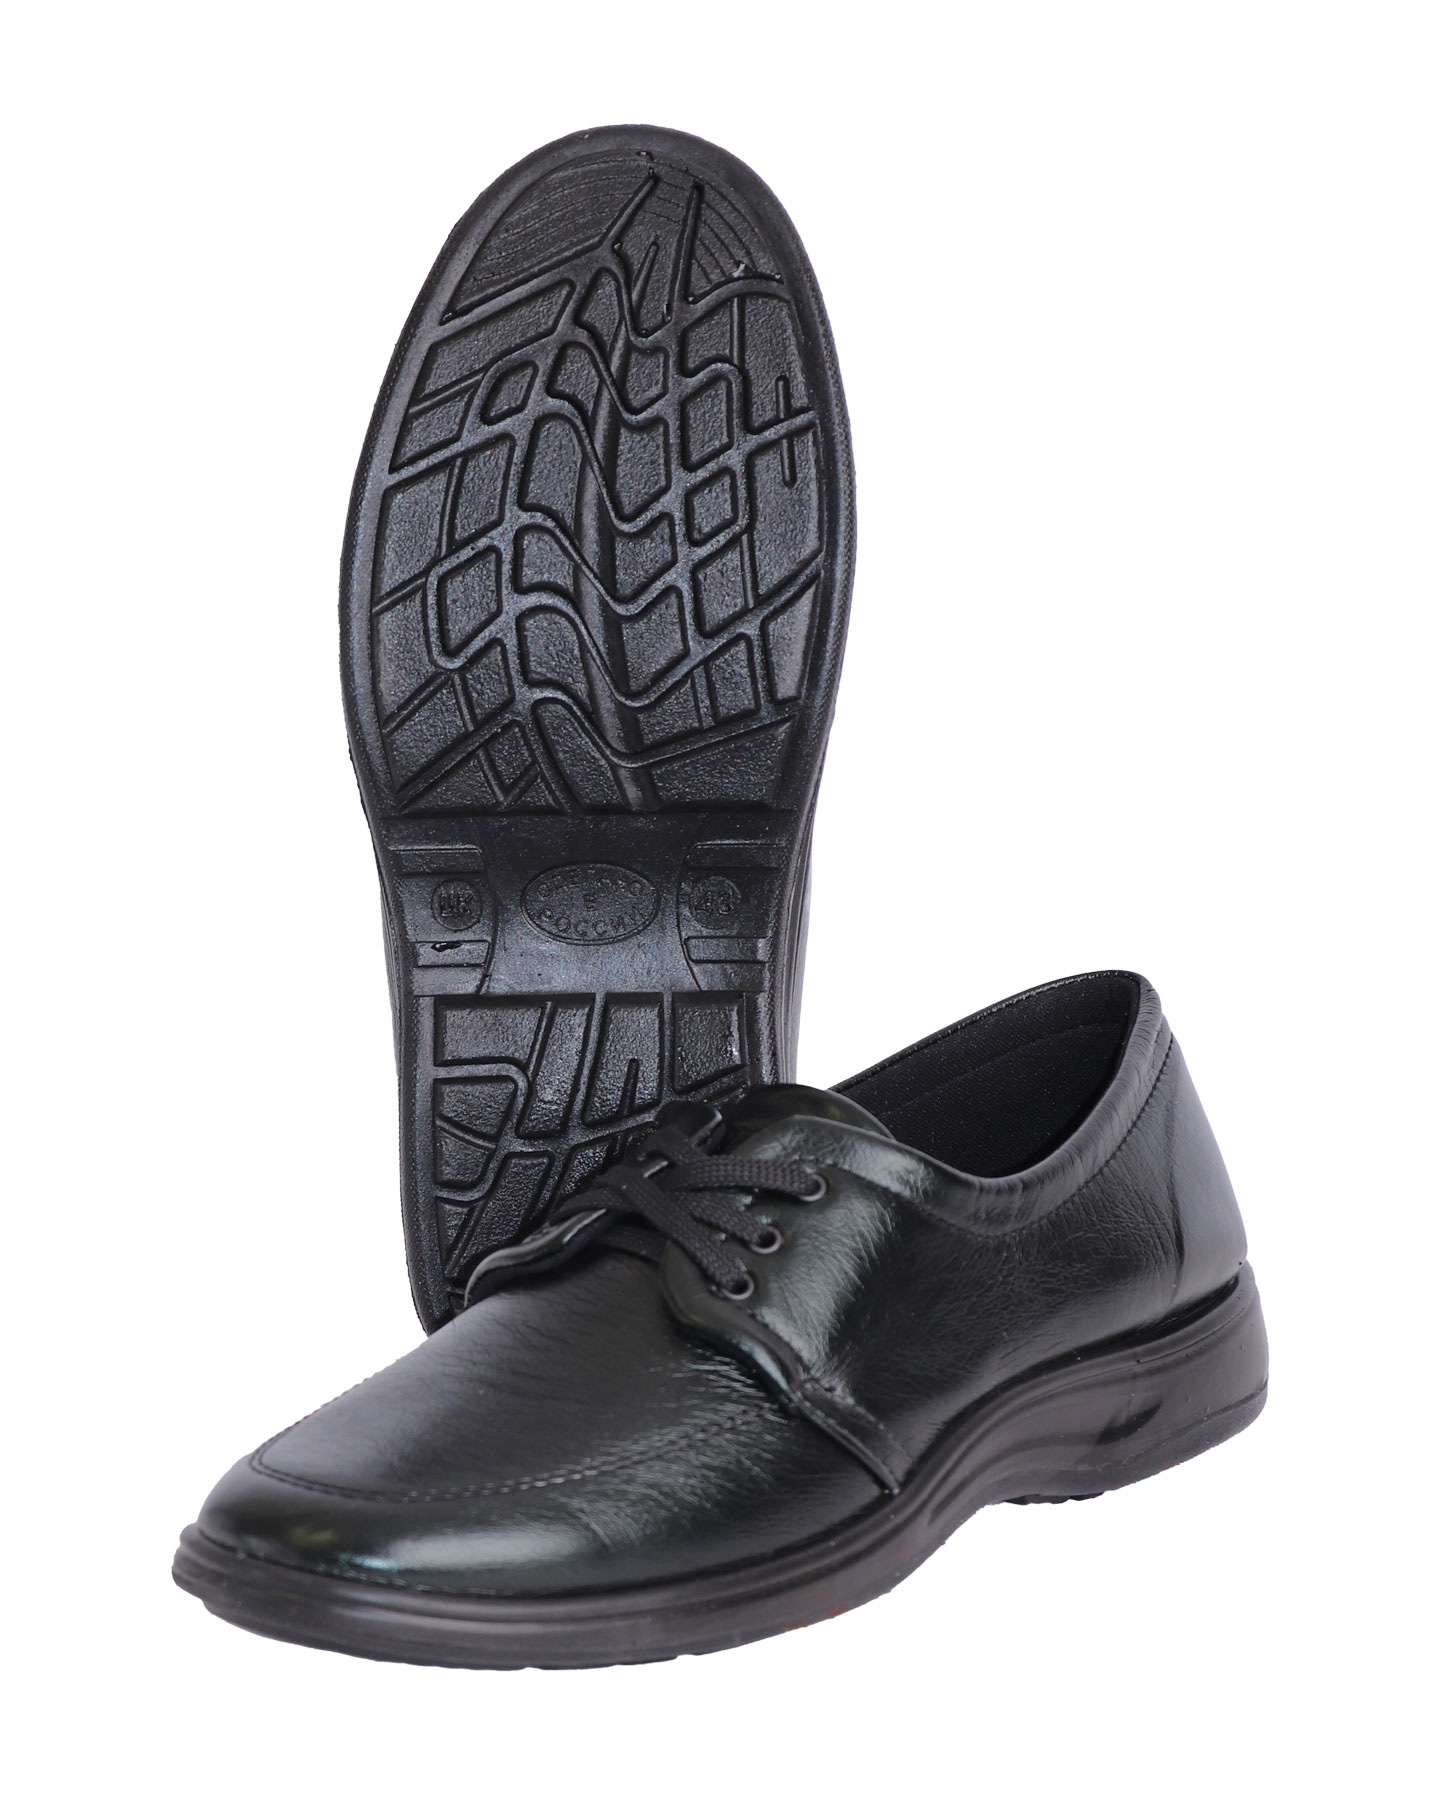 Туфли мужские на шнуровке, искусственная кожа, цвет: черный, ПУ